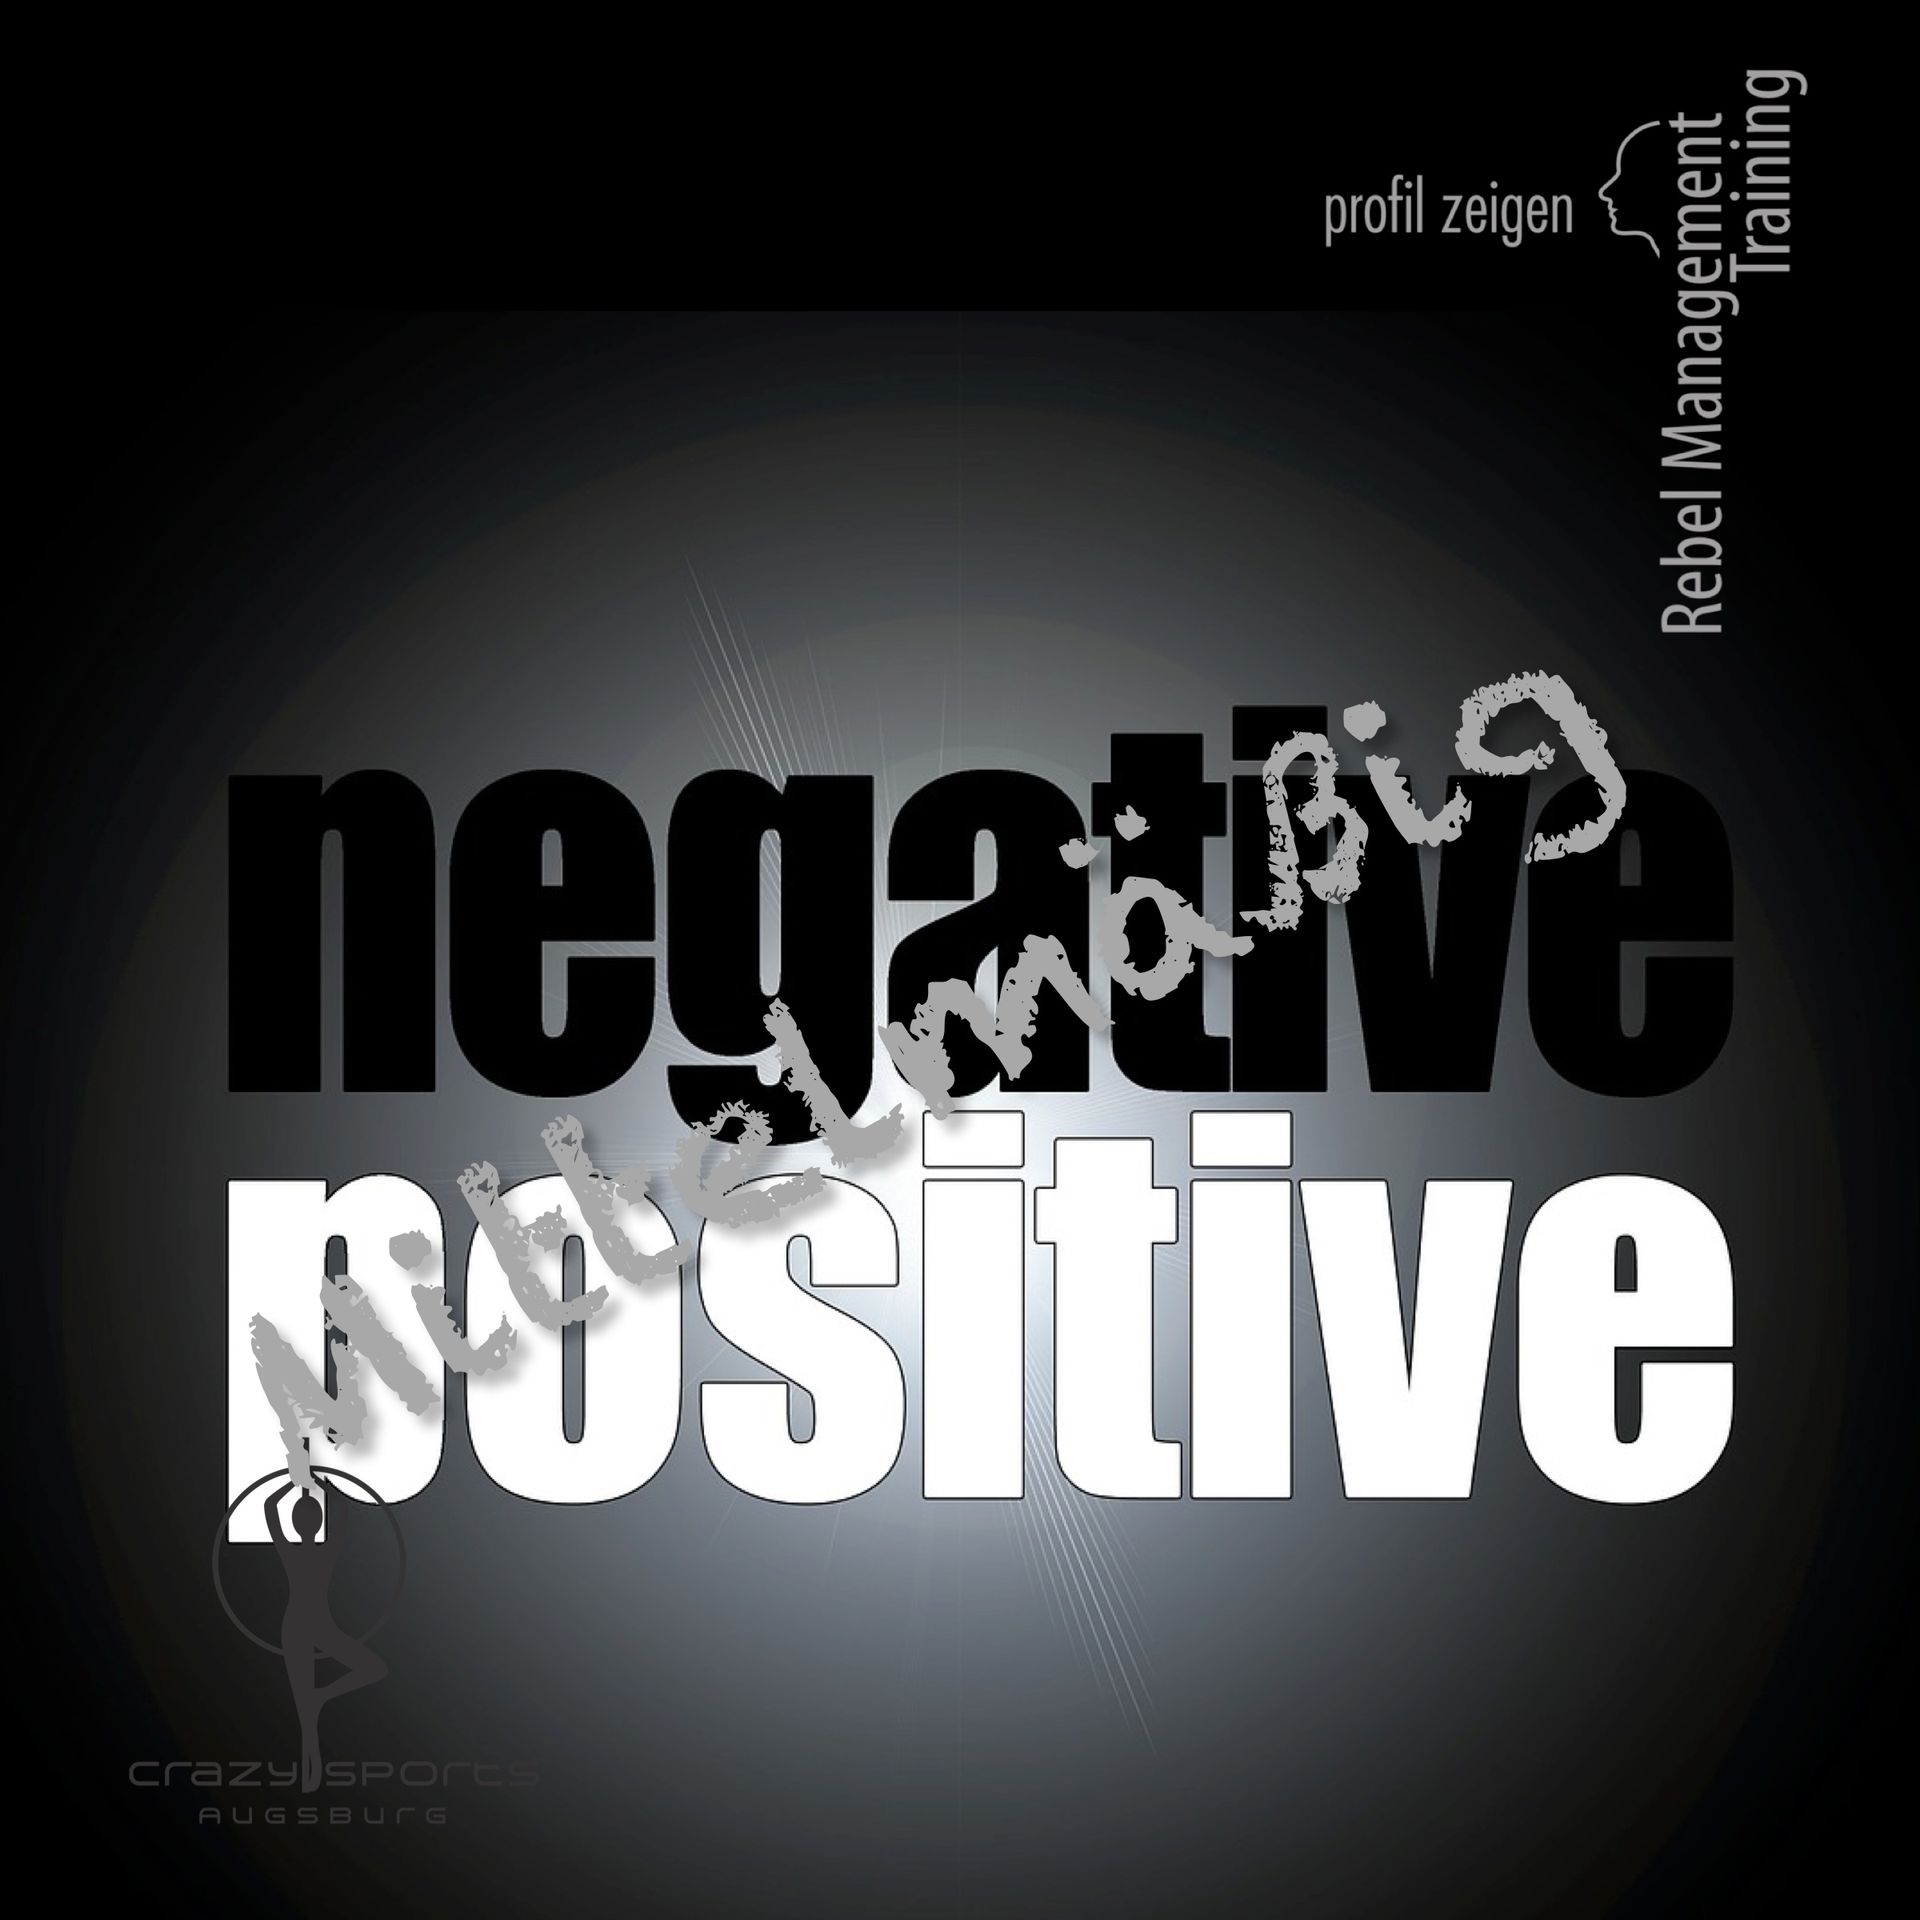 Positiv - negativ - mittelmäßig